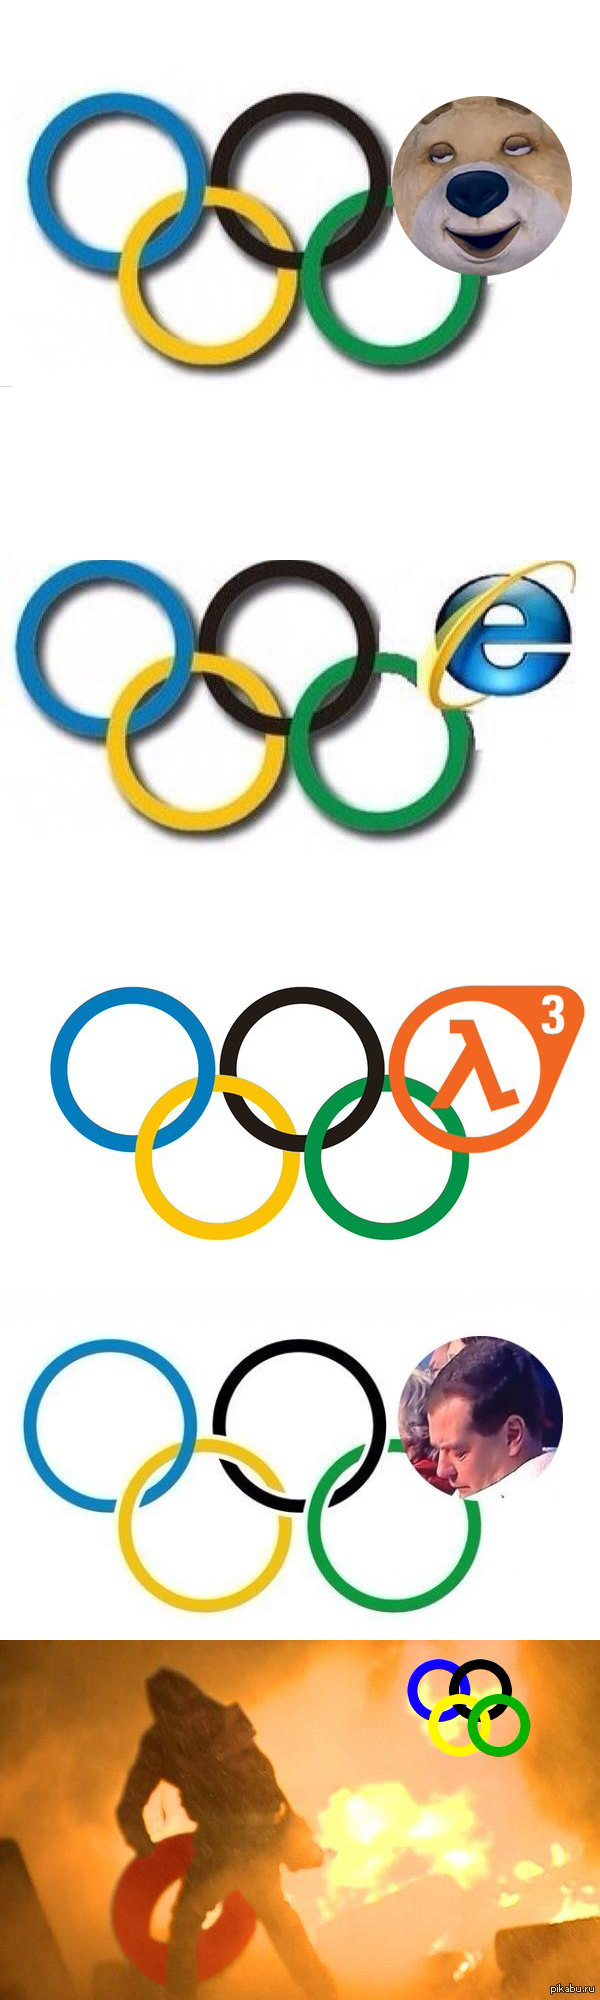 Круги Олимпийских игр